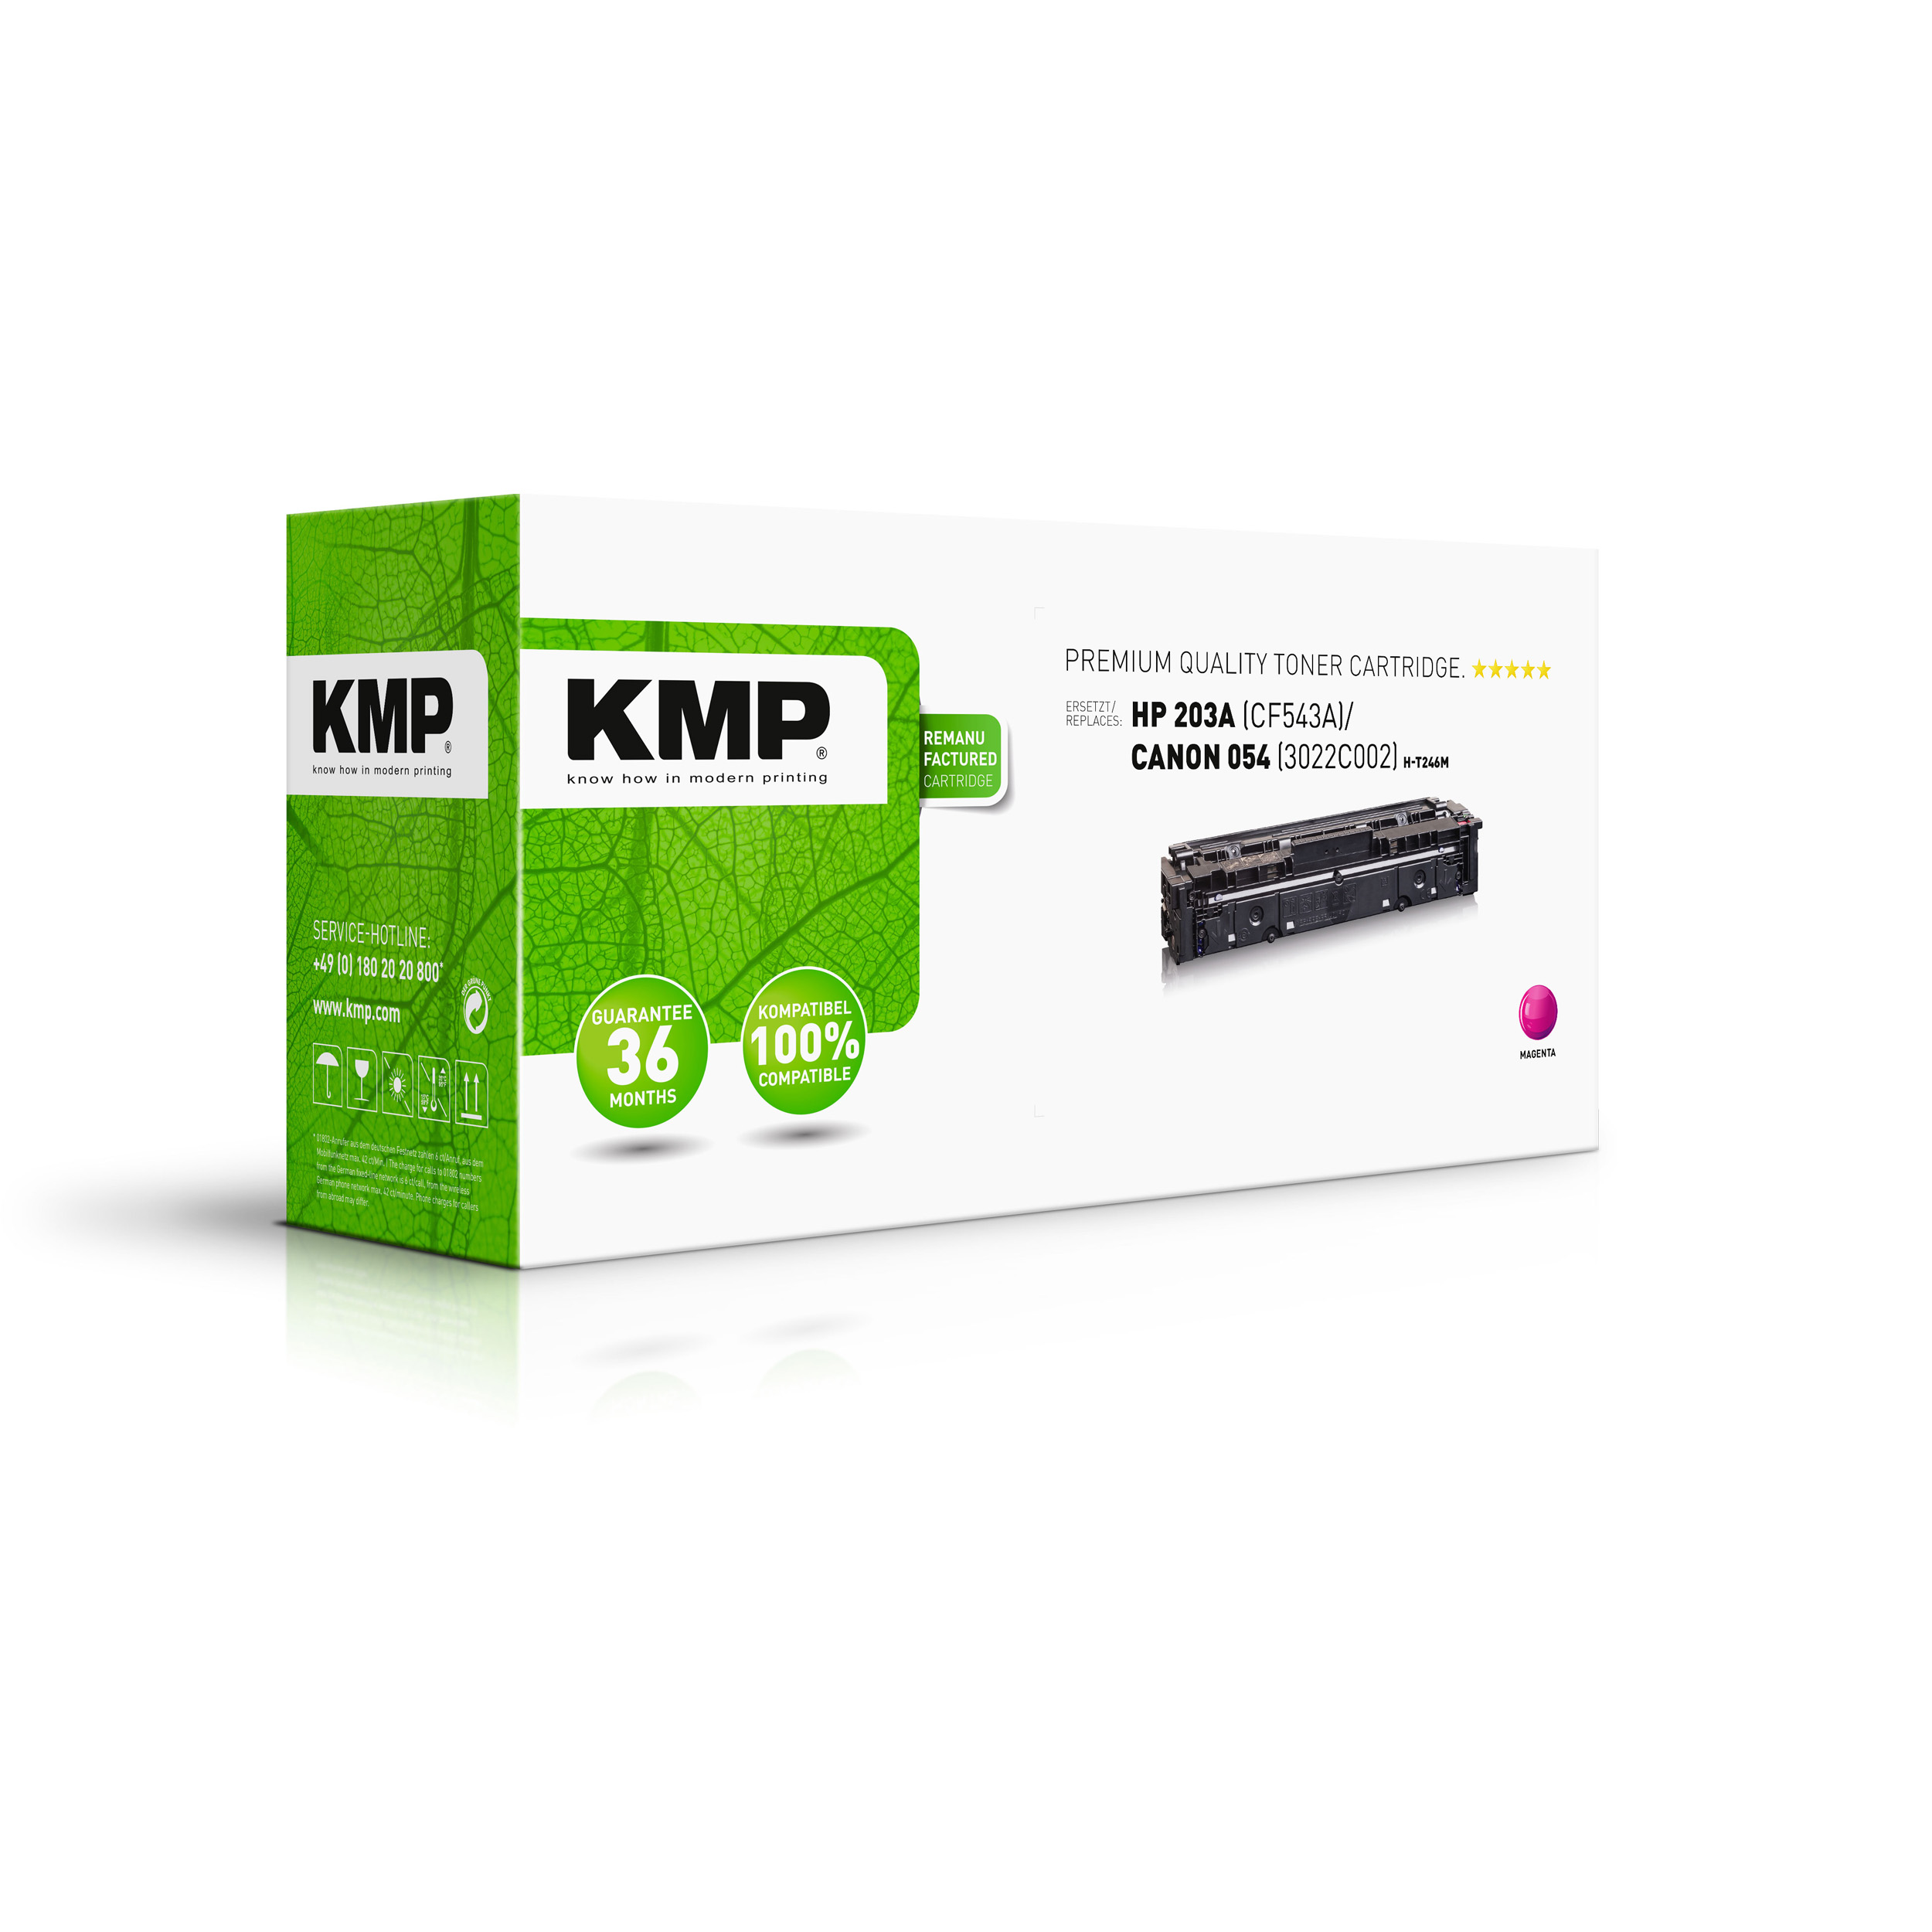 KMP HP (3022C002) magenta Toner für (CF543A) Toner 203A Magenta